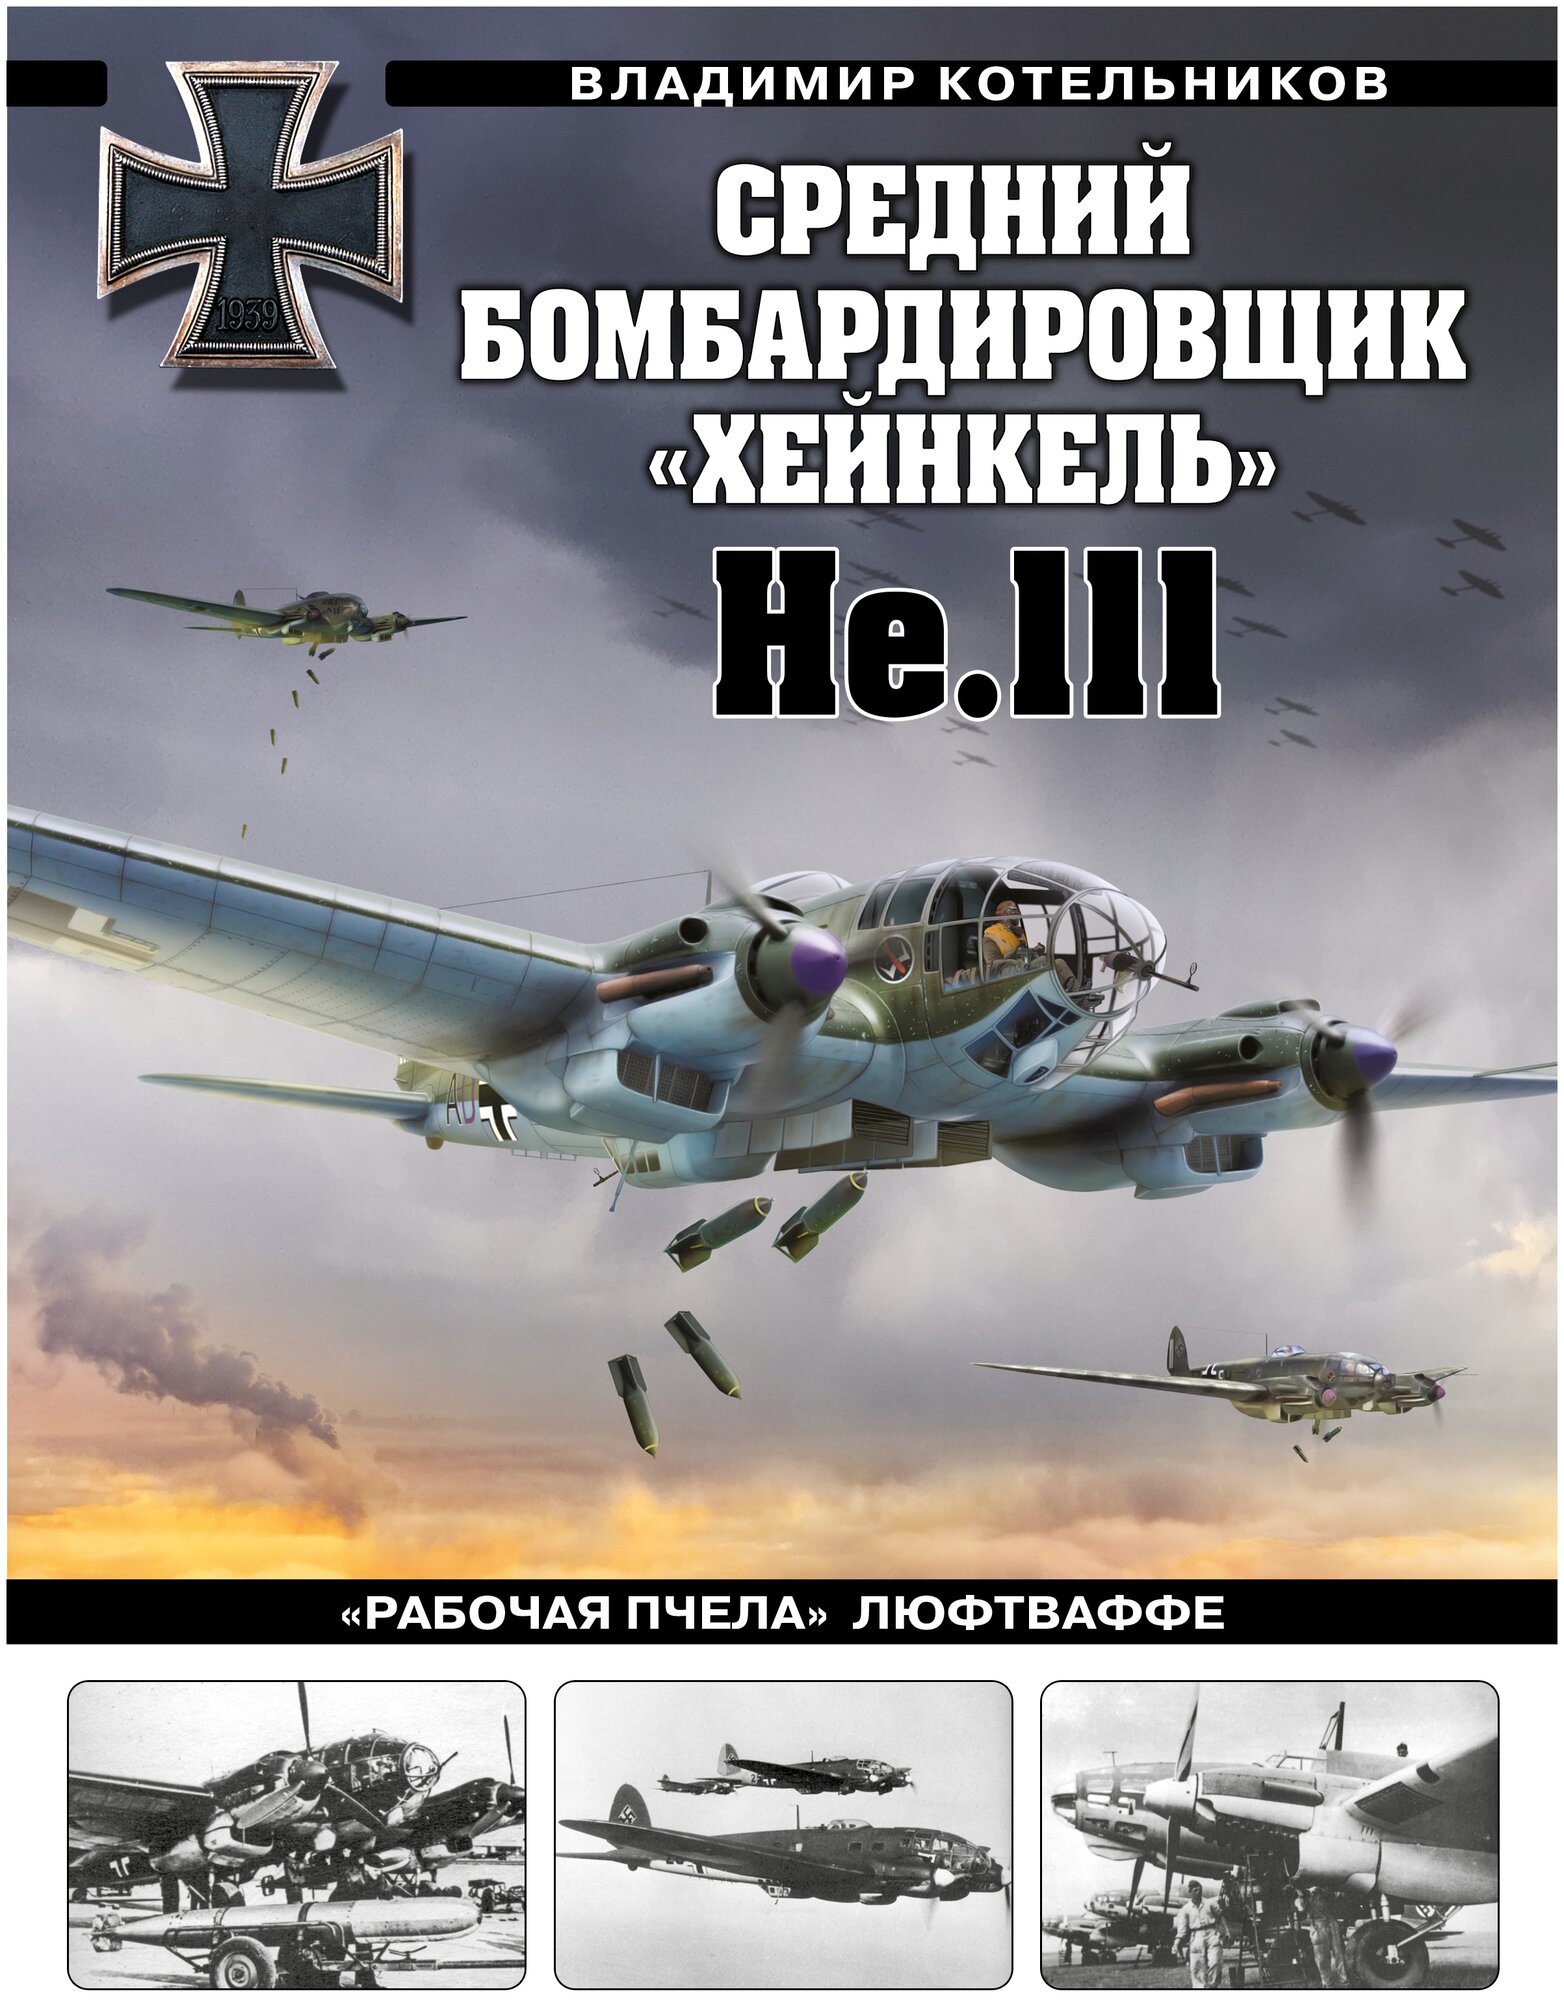 Средний бомбардировщик Хейнкель He 111 Рабочая пчела Люфтваффе - фото №1